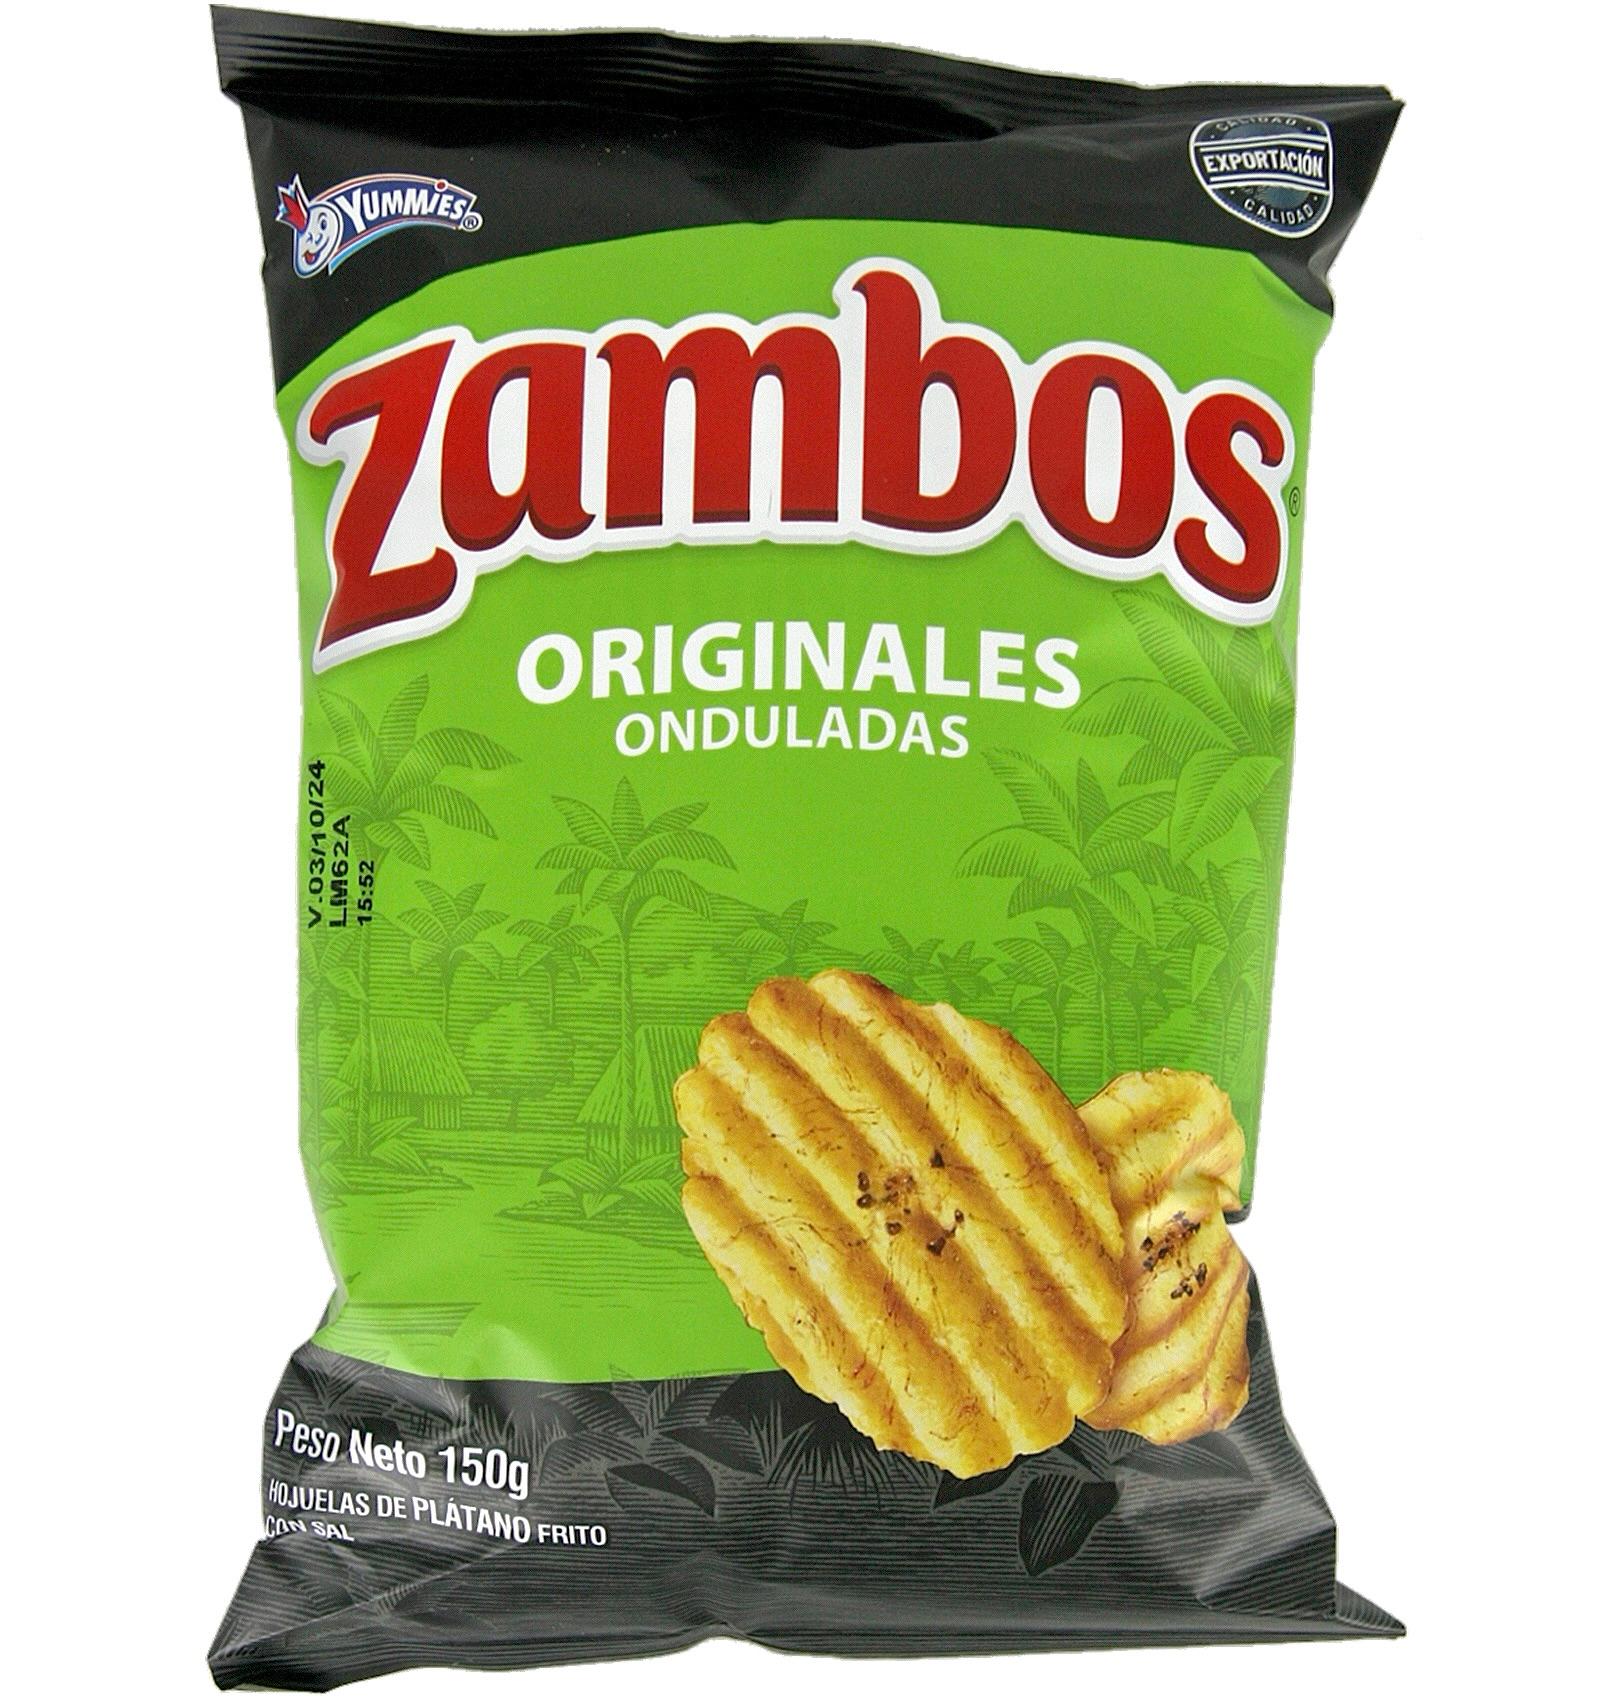 Zambos Originales